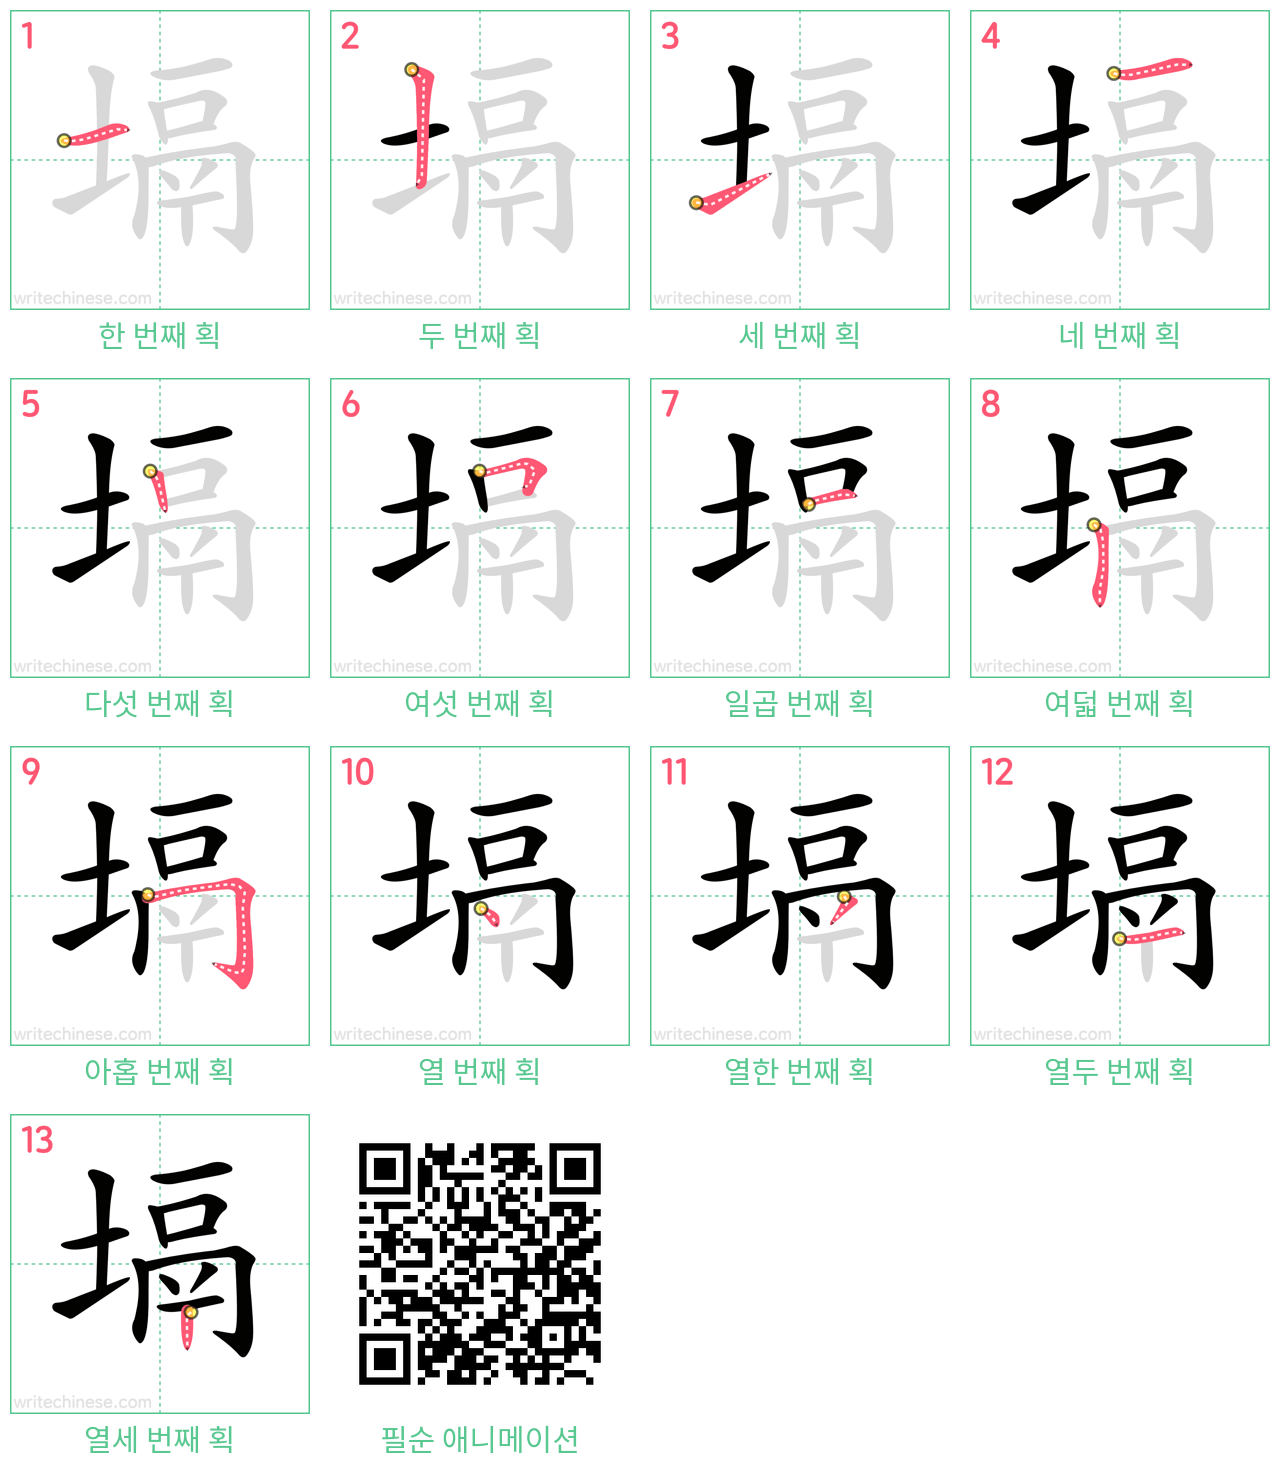 塥 step-by-step stroke order diagrams